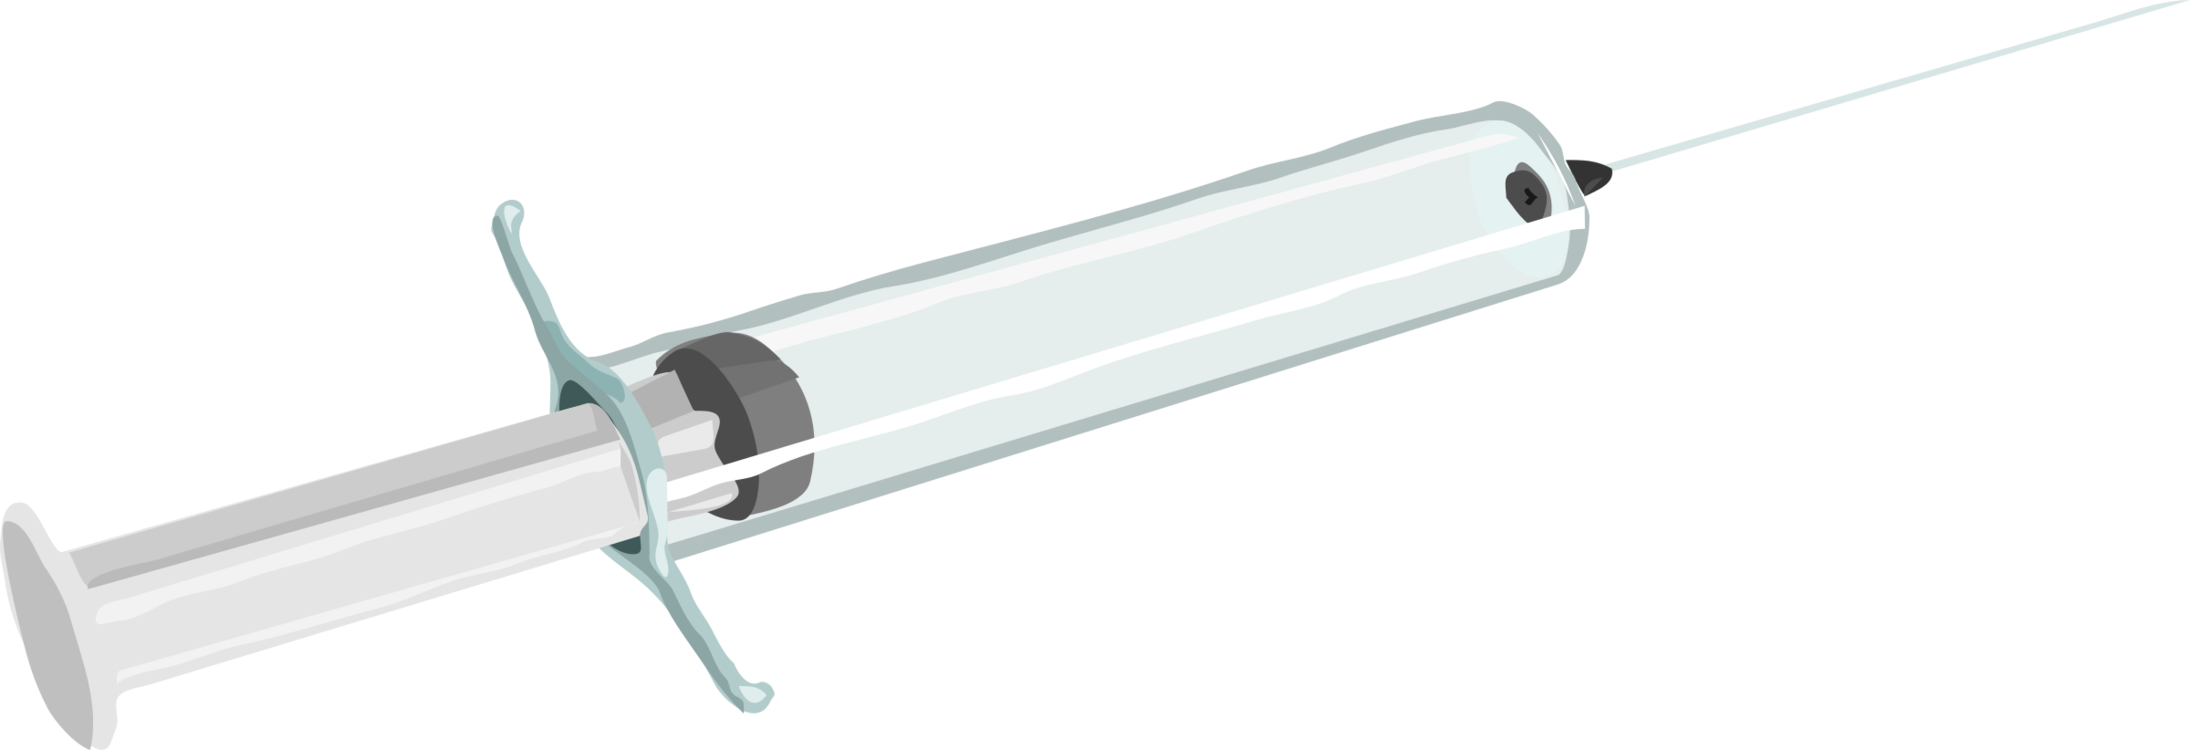 Free Vector Syringe Clip Art - Syringe Clip Art (600x206), Png Download